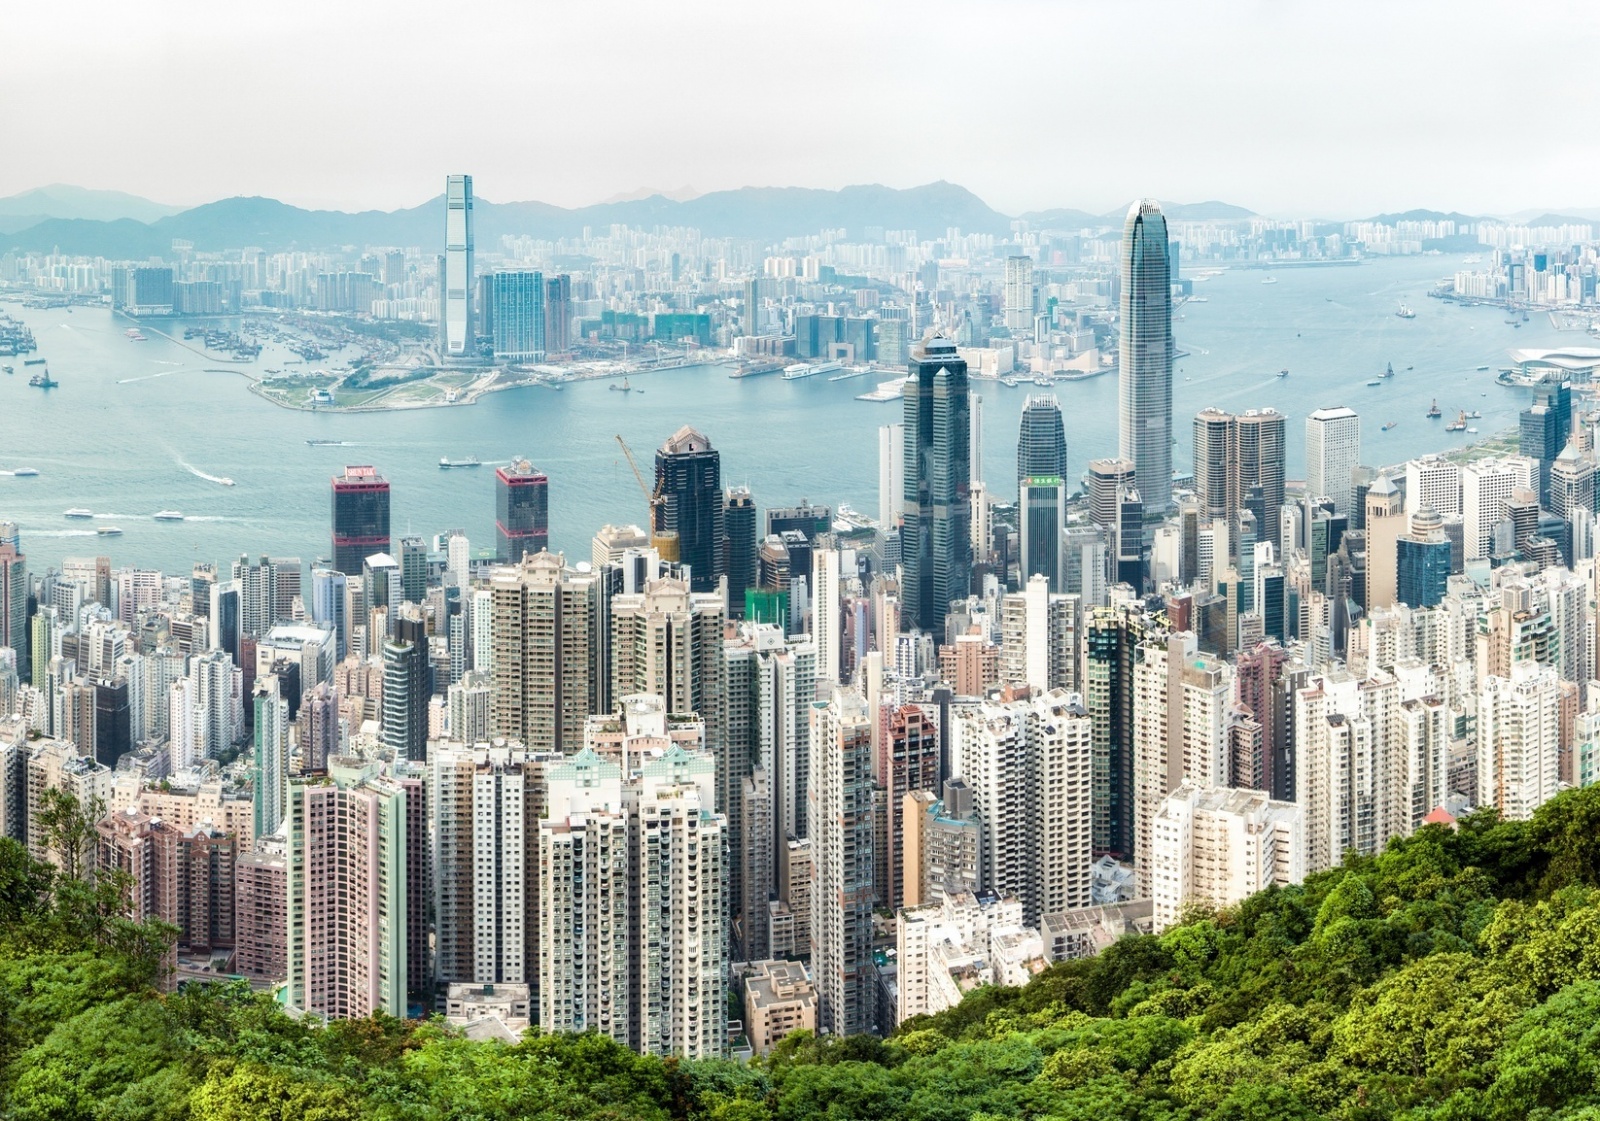 Niedziela w Hongkongu Biuro podróży Goforworld by Kuźniar